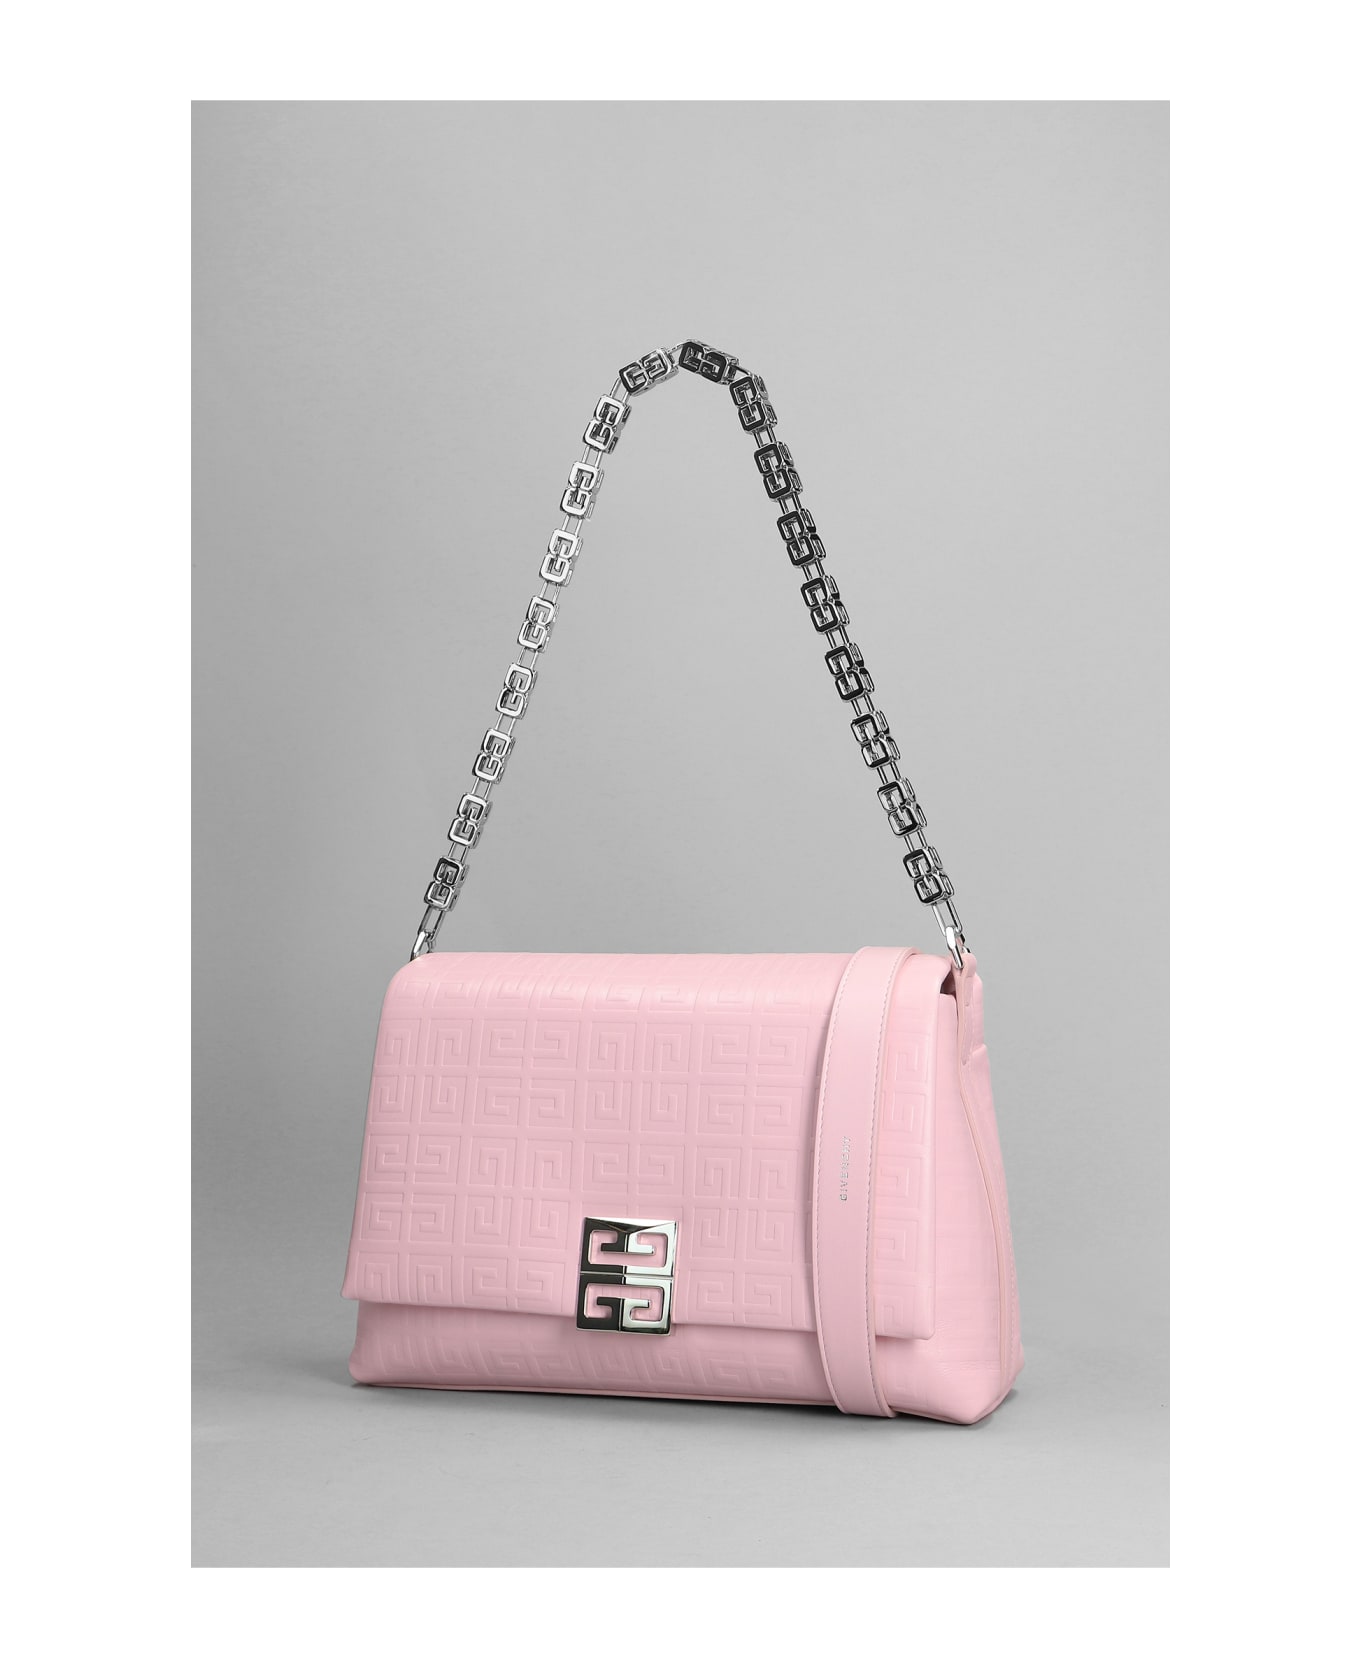 Givenchy 4g Soft Shoulder Bag In Rose-pink Leather - rose-pink